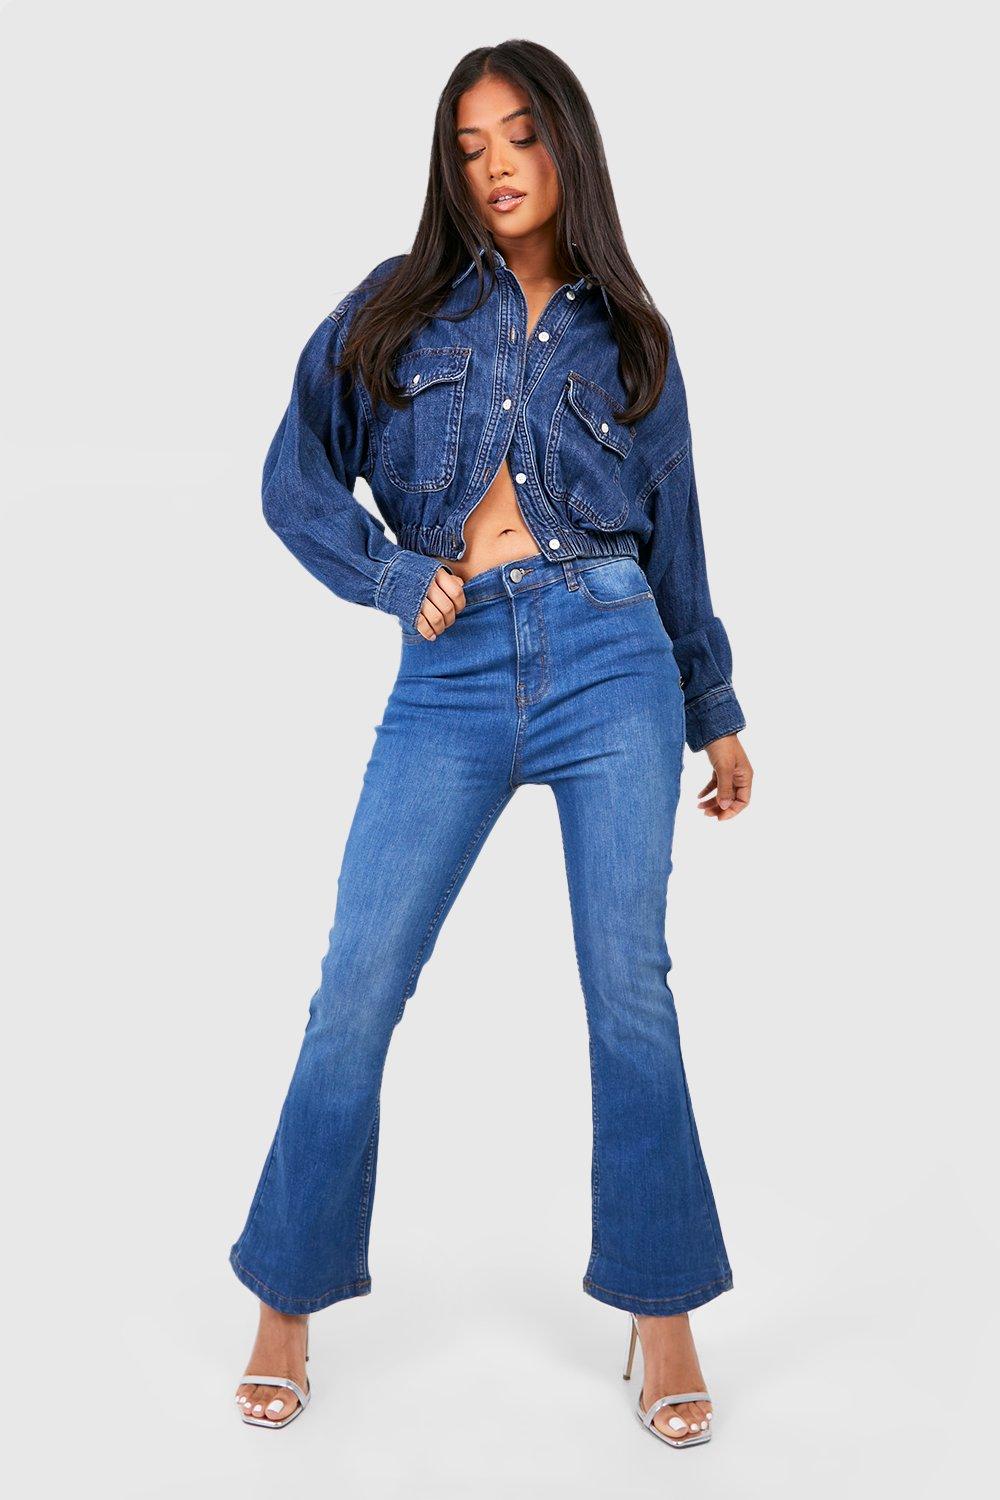 Boohoo Petite Middelblauwe Flared High Waist Skinny Jeans 28', Mid Blue